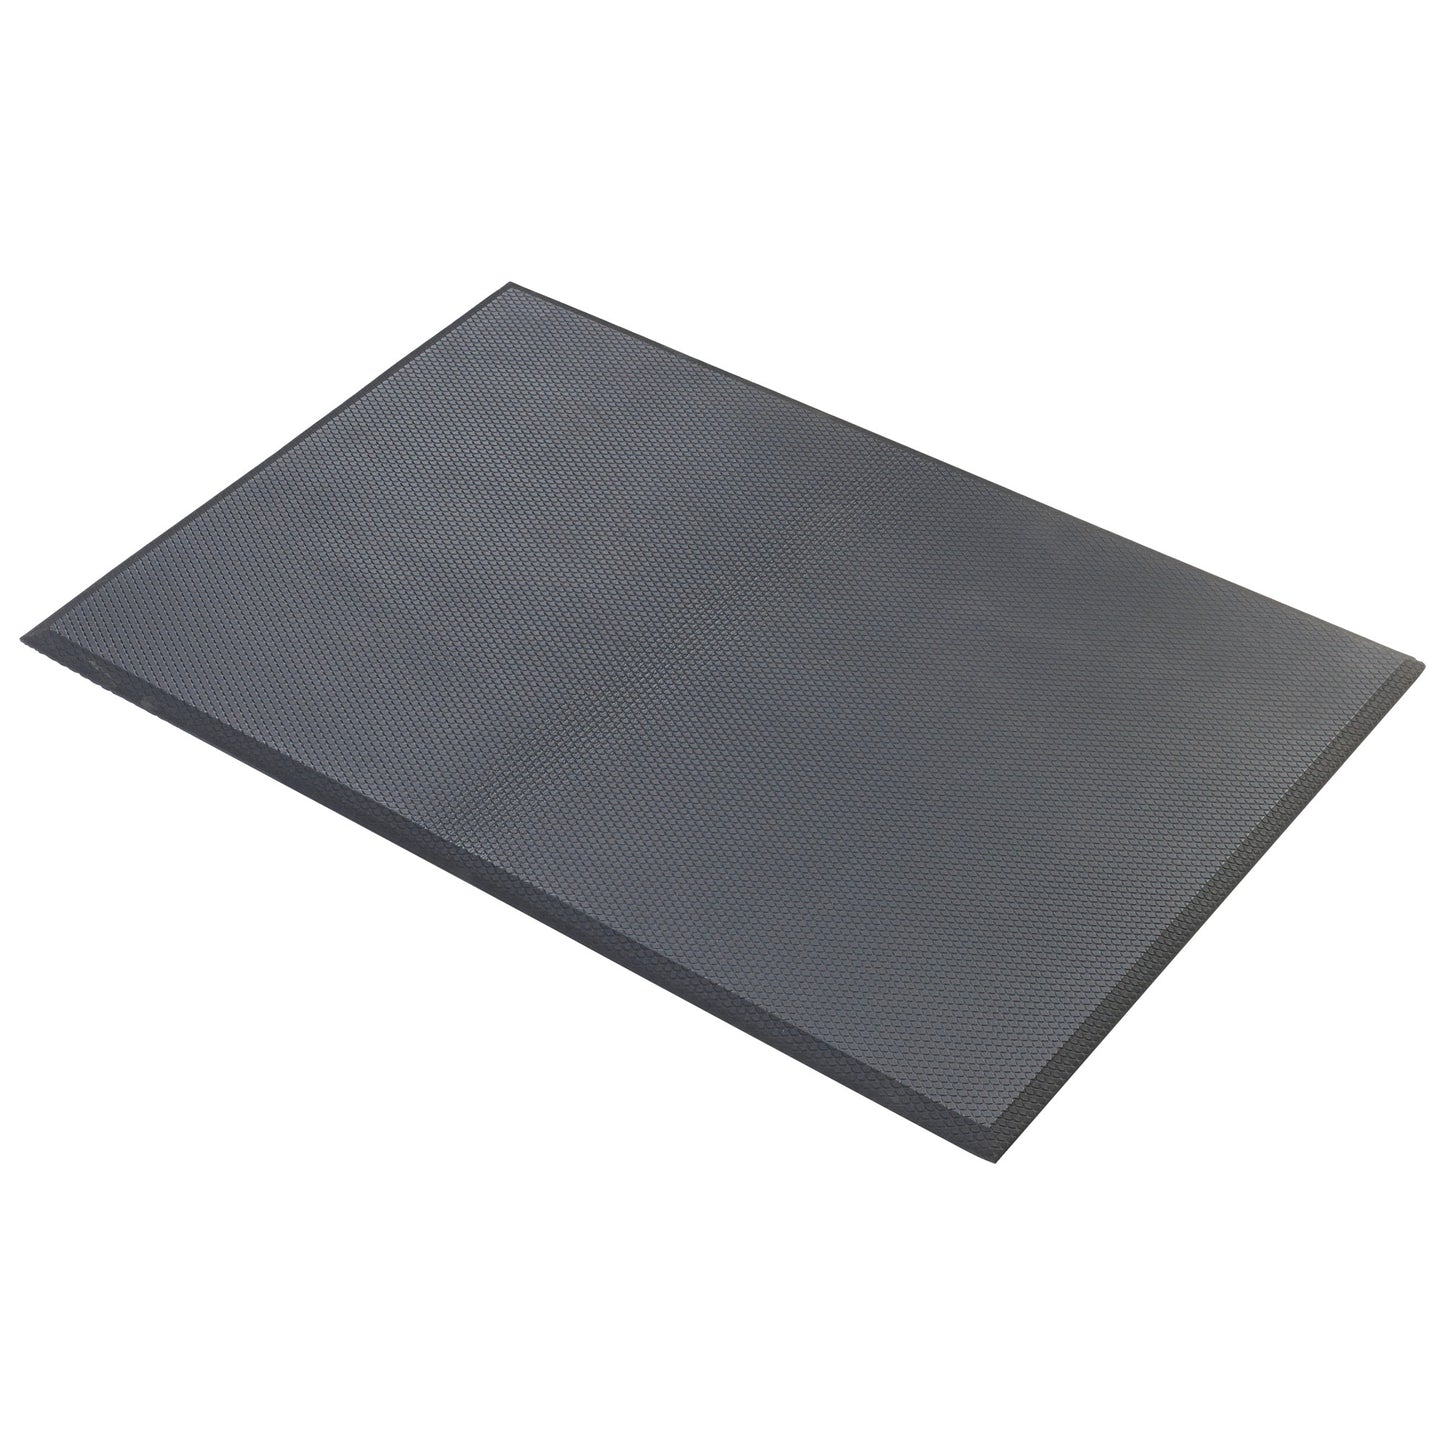 FMG-23K - Anti-Fatigue Rubberized Gel Foam Floor Mat, Black